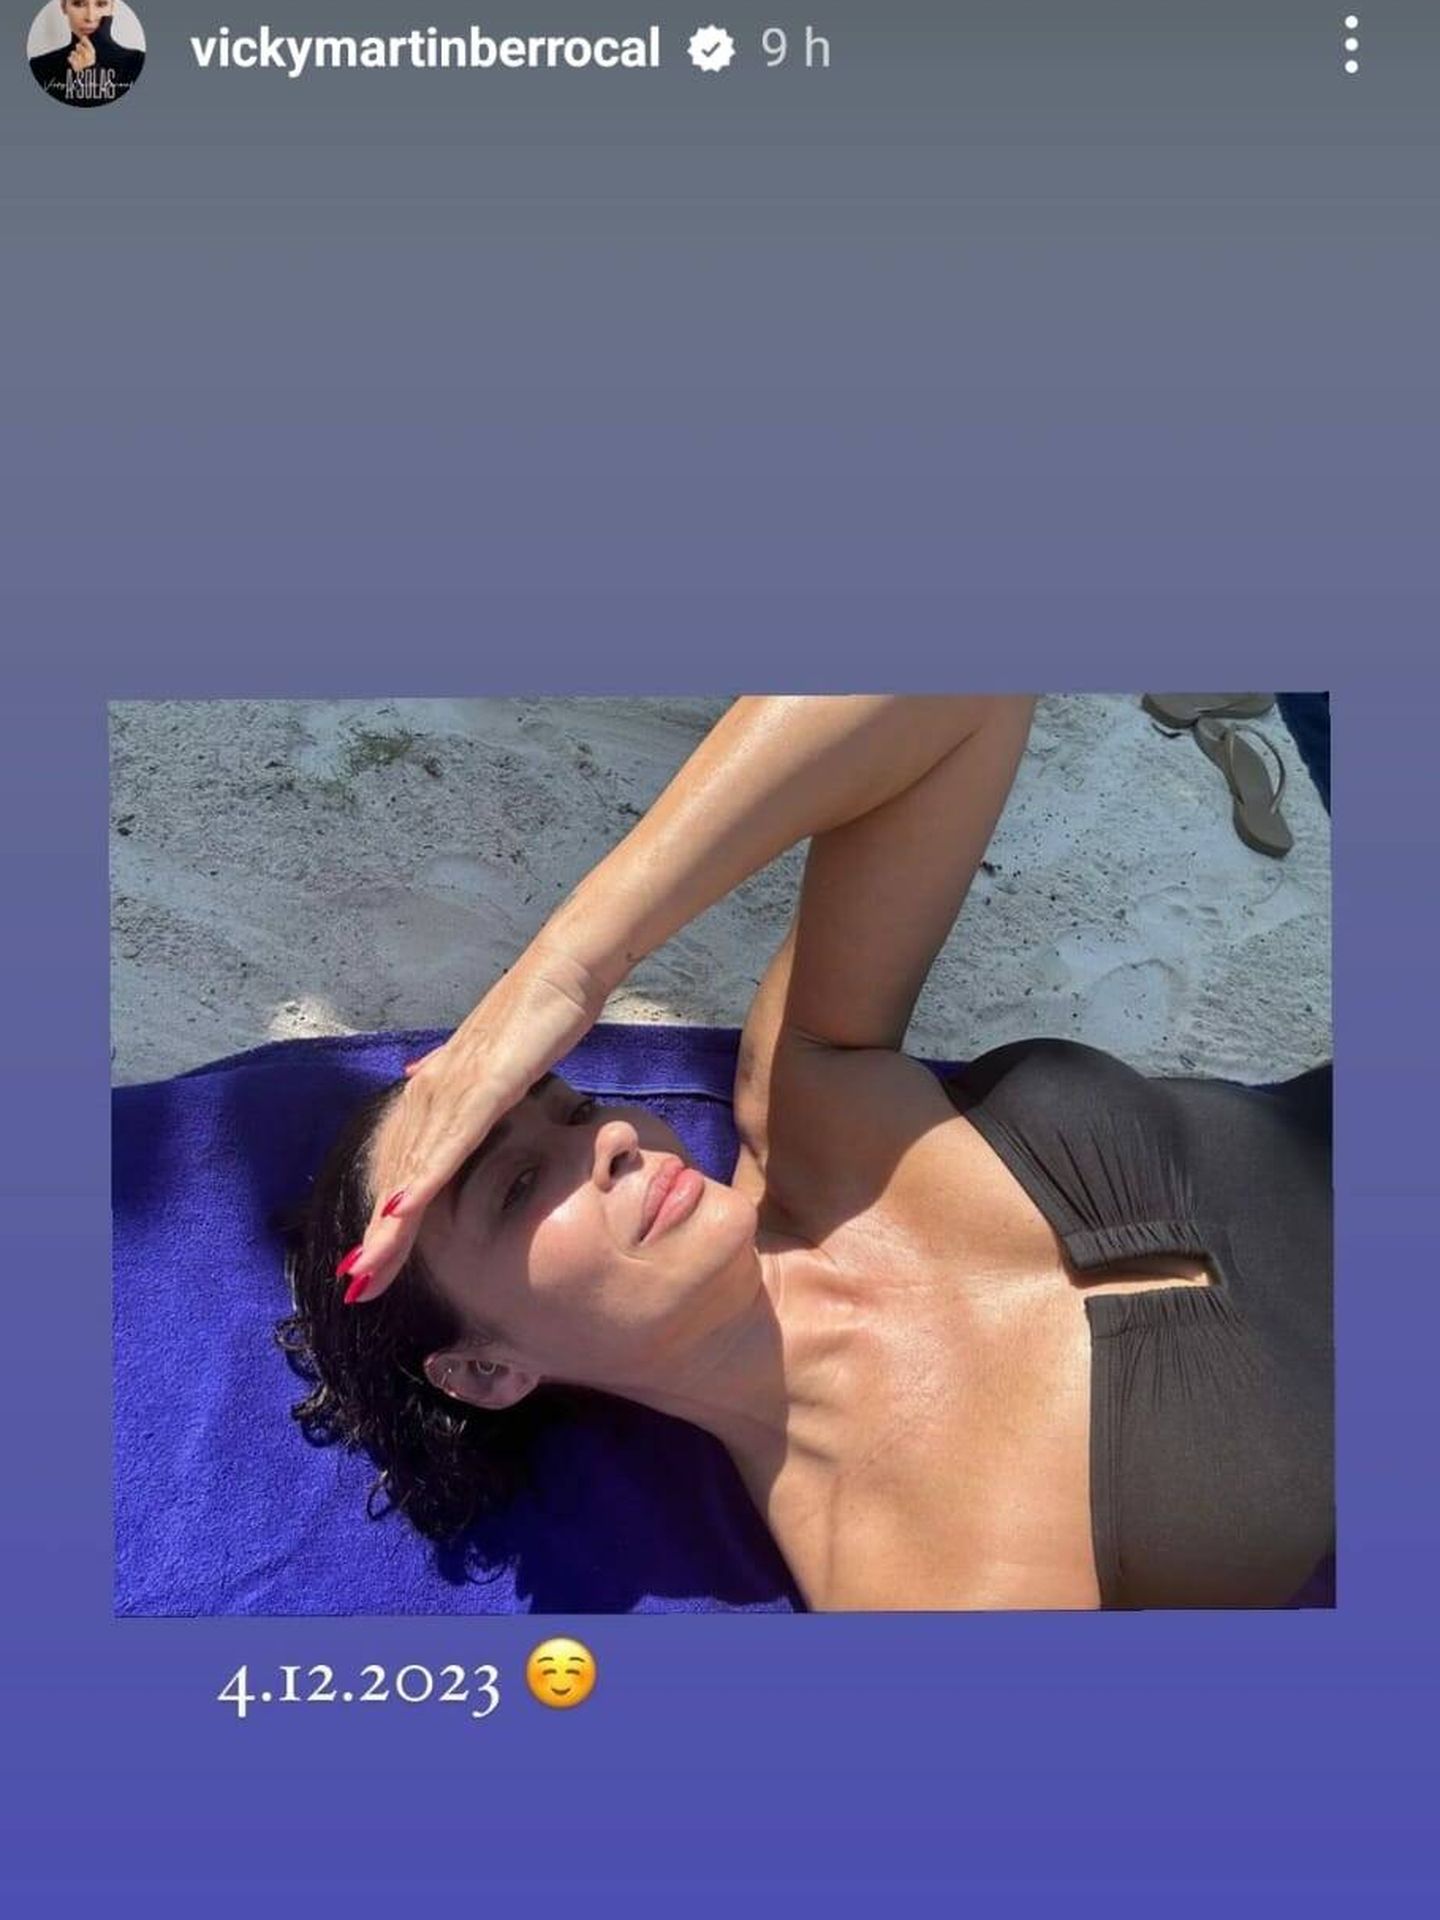 Vicky toma el sol en traje de baño. (Instagram/@vickymartinberrocal)